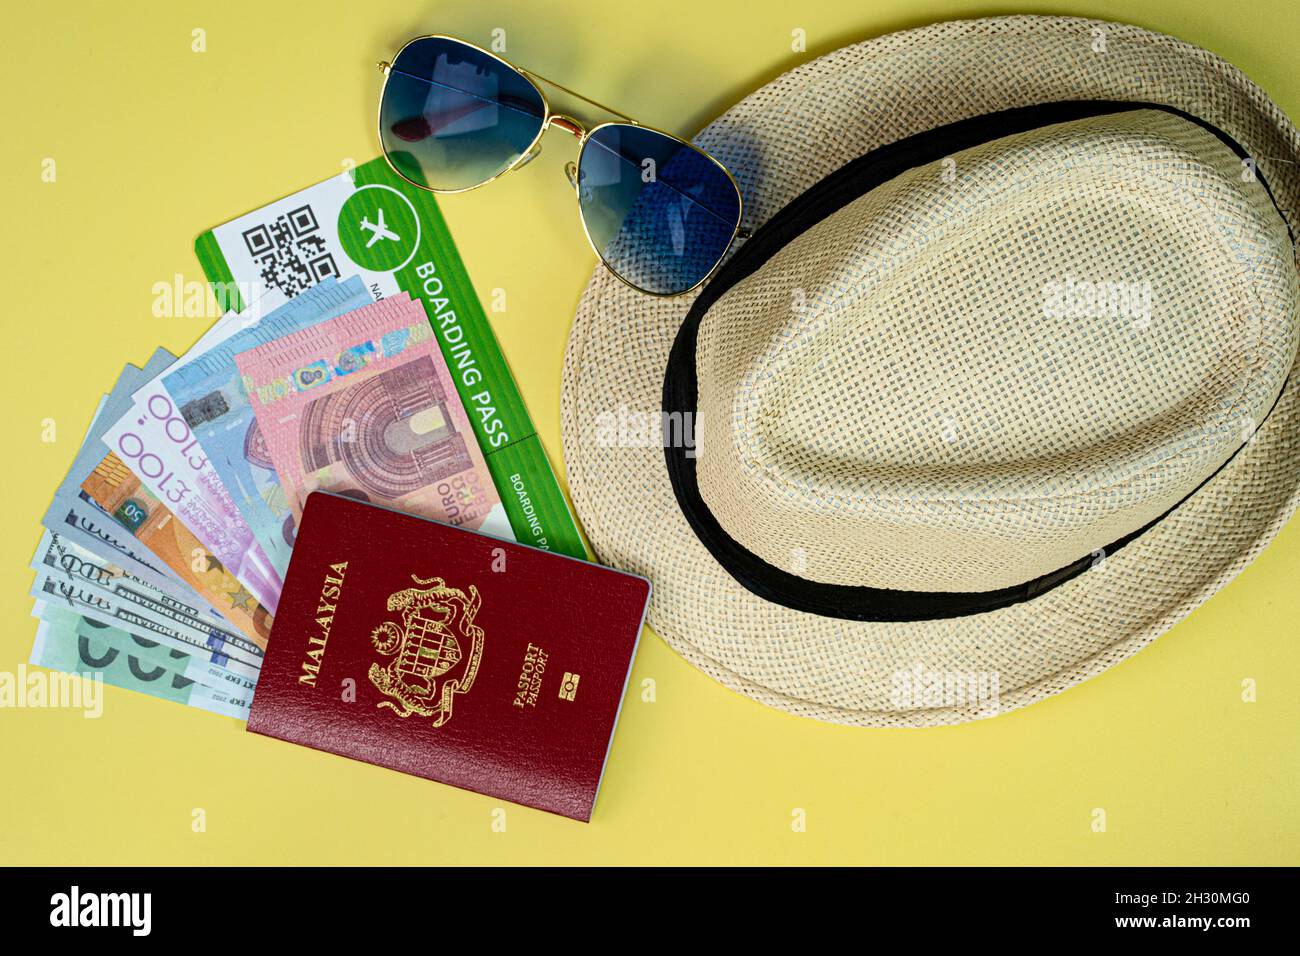 Concept de vacances.Présentation du passeport, de la carte d'embarquement, des lunettes de soleil, du chapeau de paille et de l'argent factice.Les gens sont prêts à partir en vacances après la longue pandémie Banque D'Images